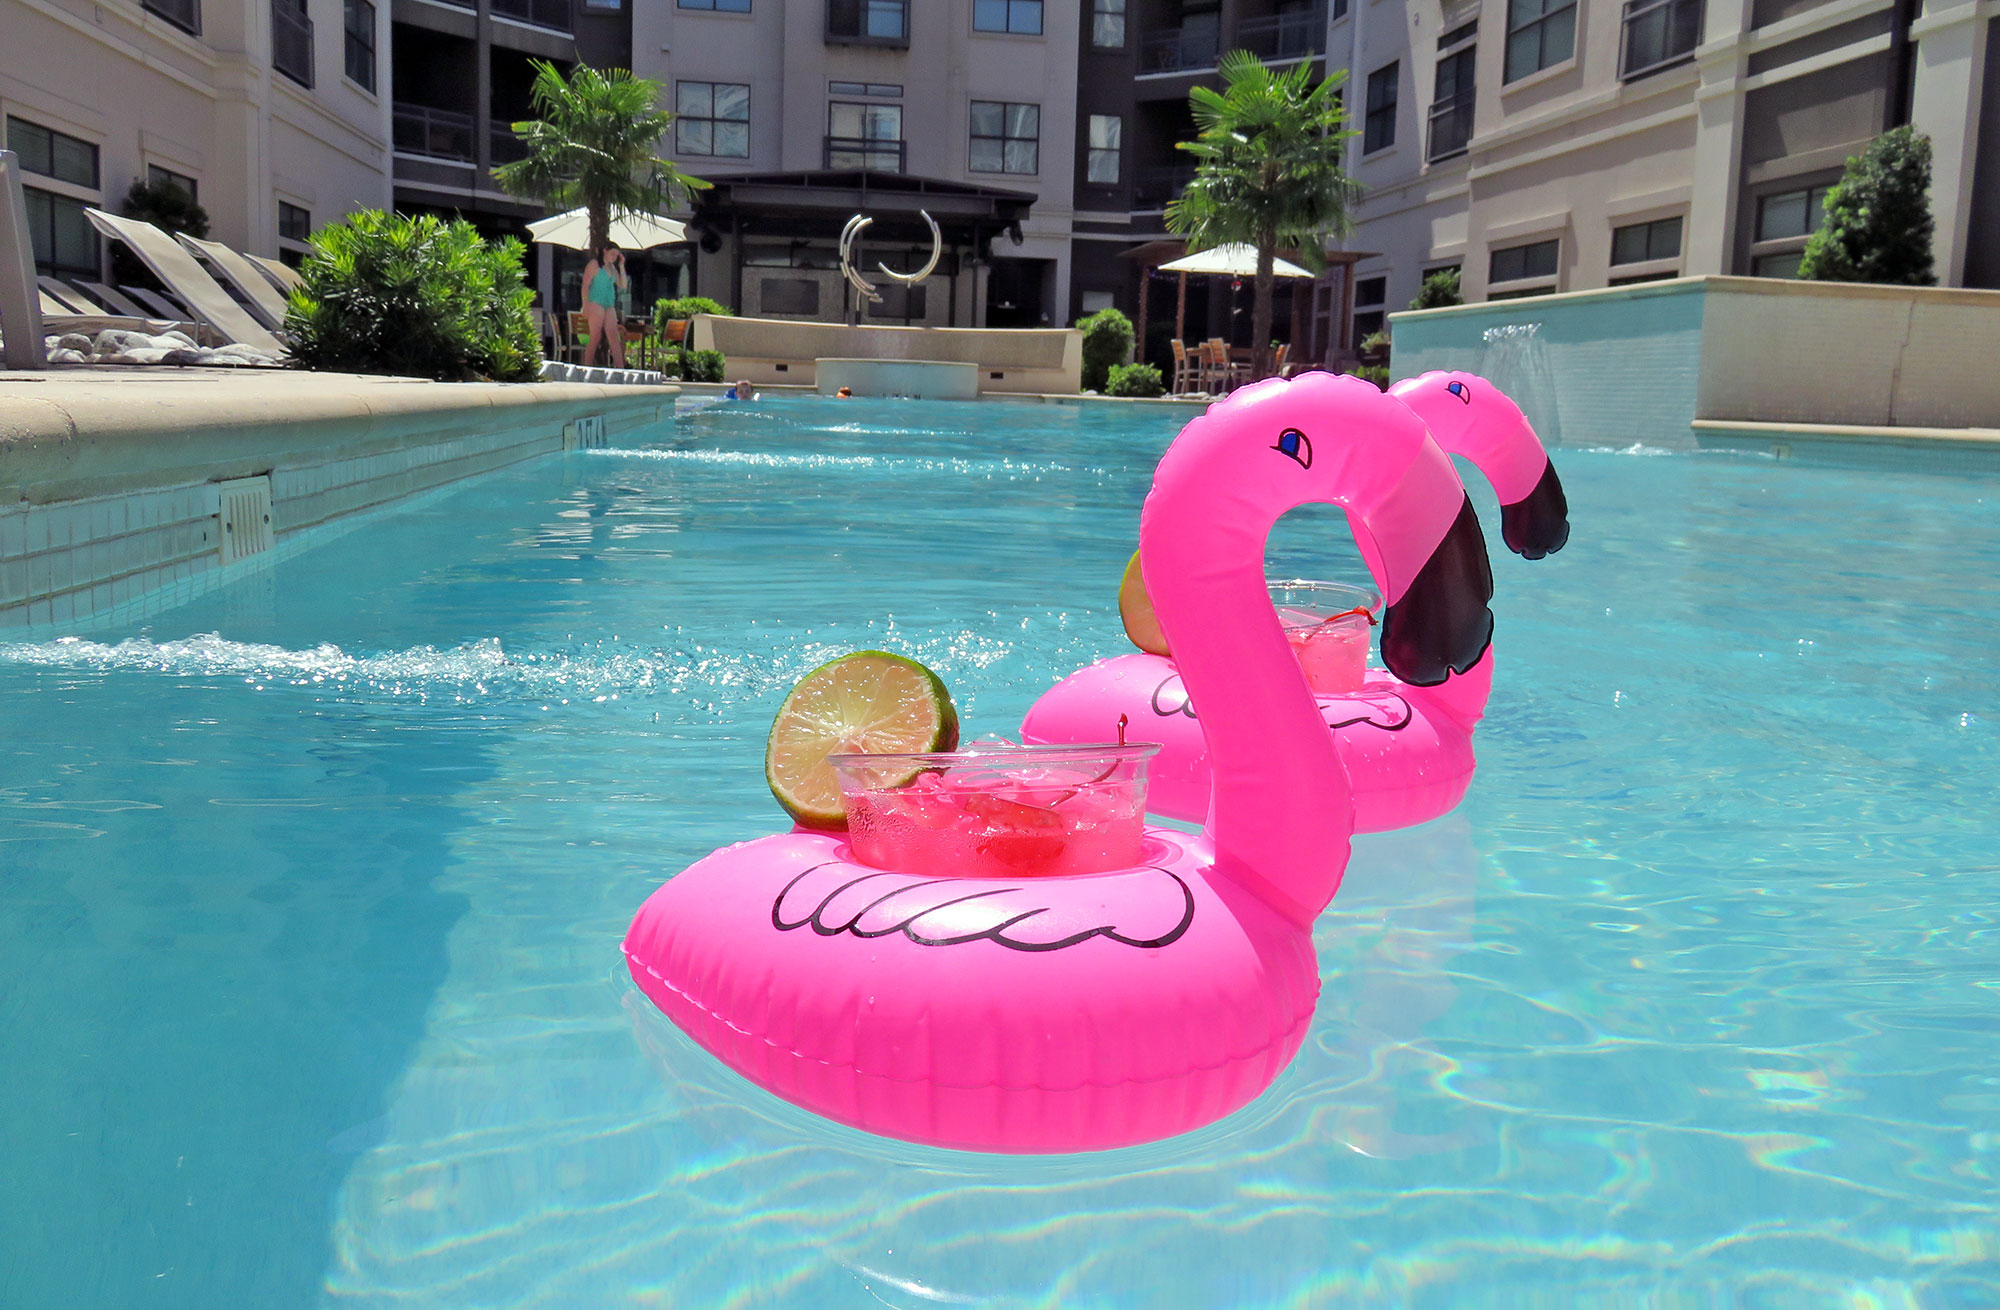 Flamingo pool floaties